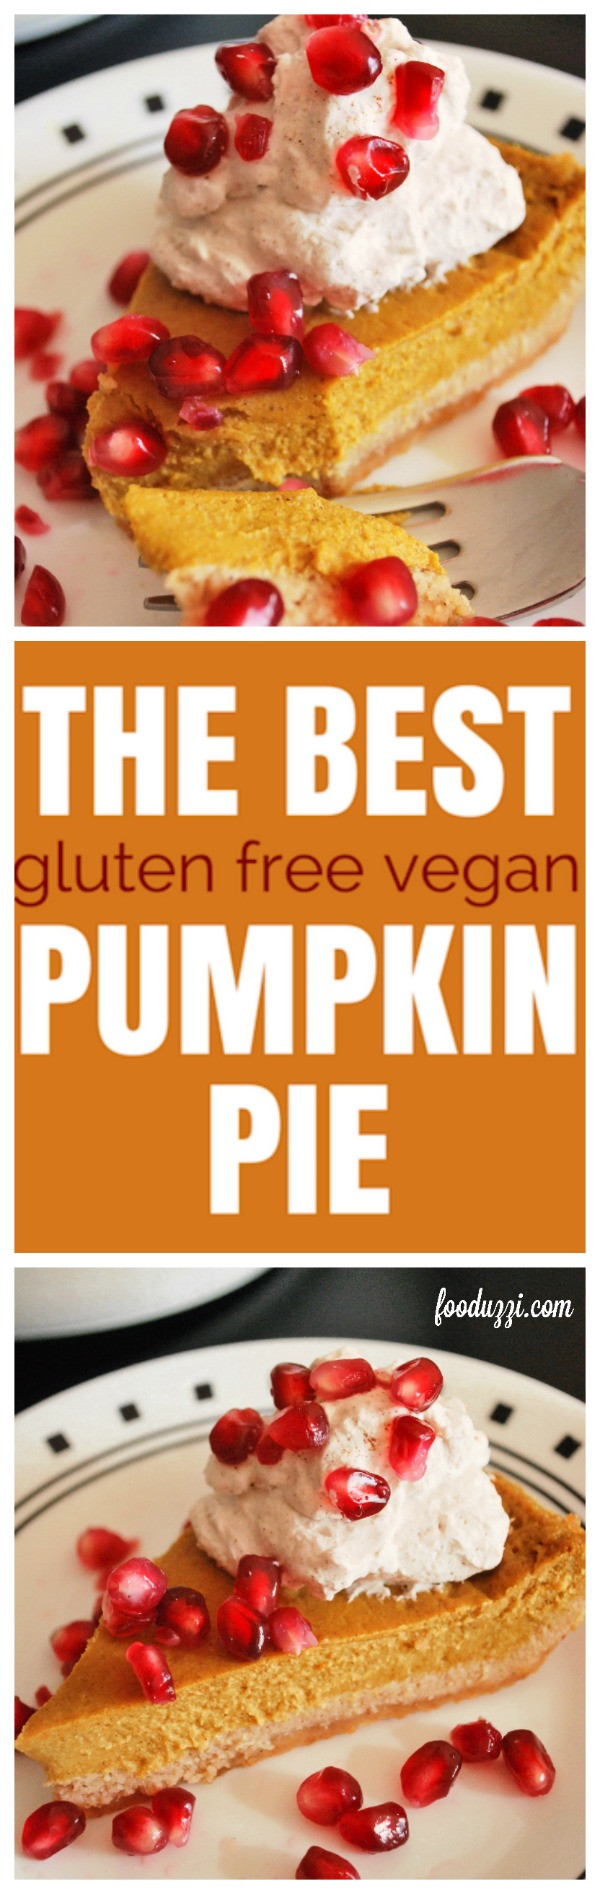 Dairy Free Gluten Free Pumpkin Pie
 The Best Gluten Free Vegan Pumpkin Pie Fooduzzi